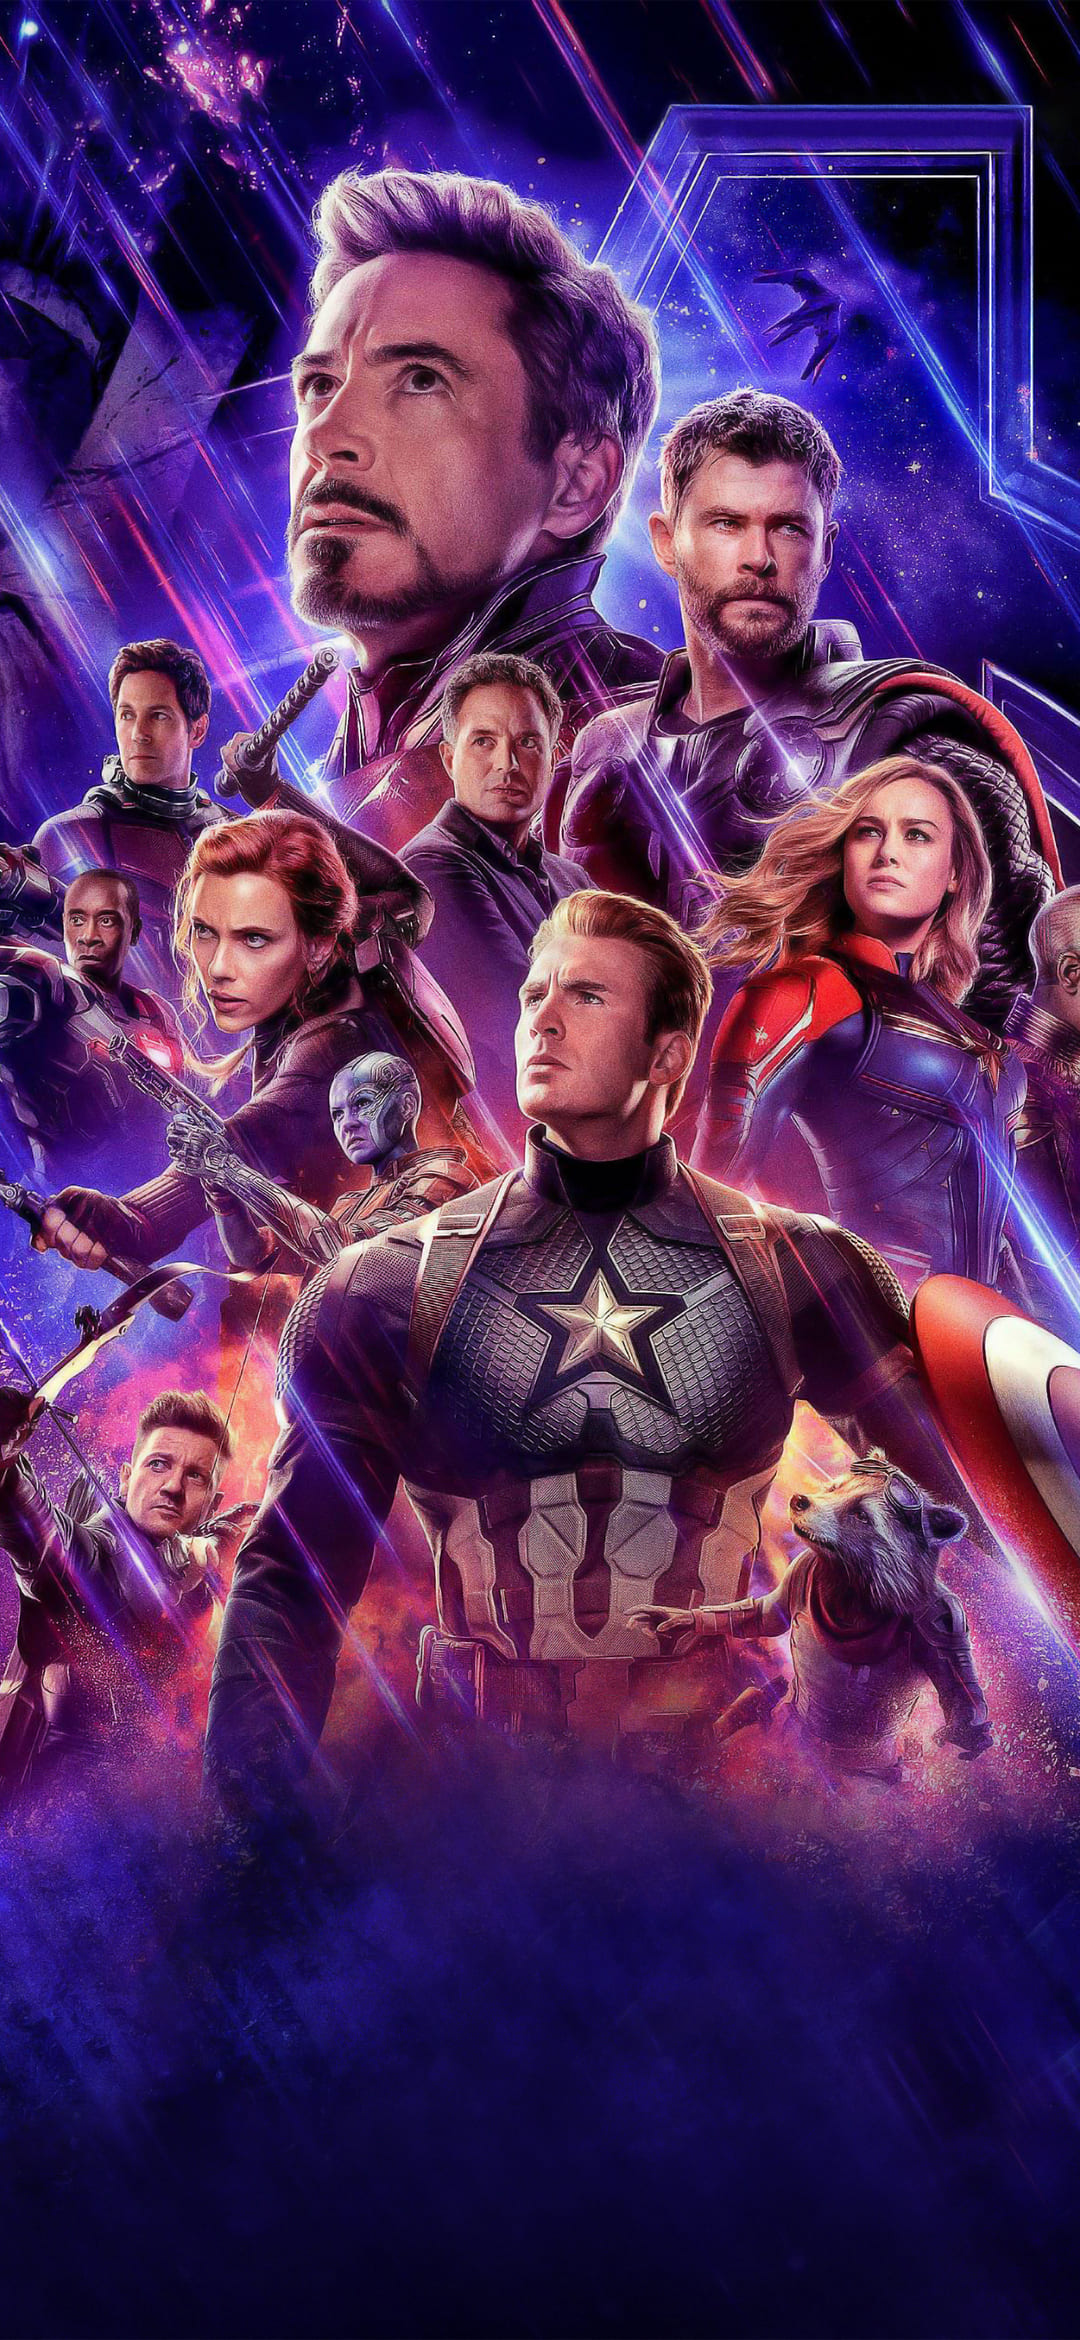 Avengers Endgame Wallpaper Android